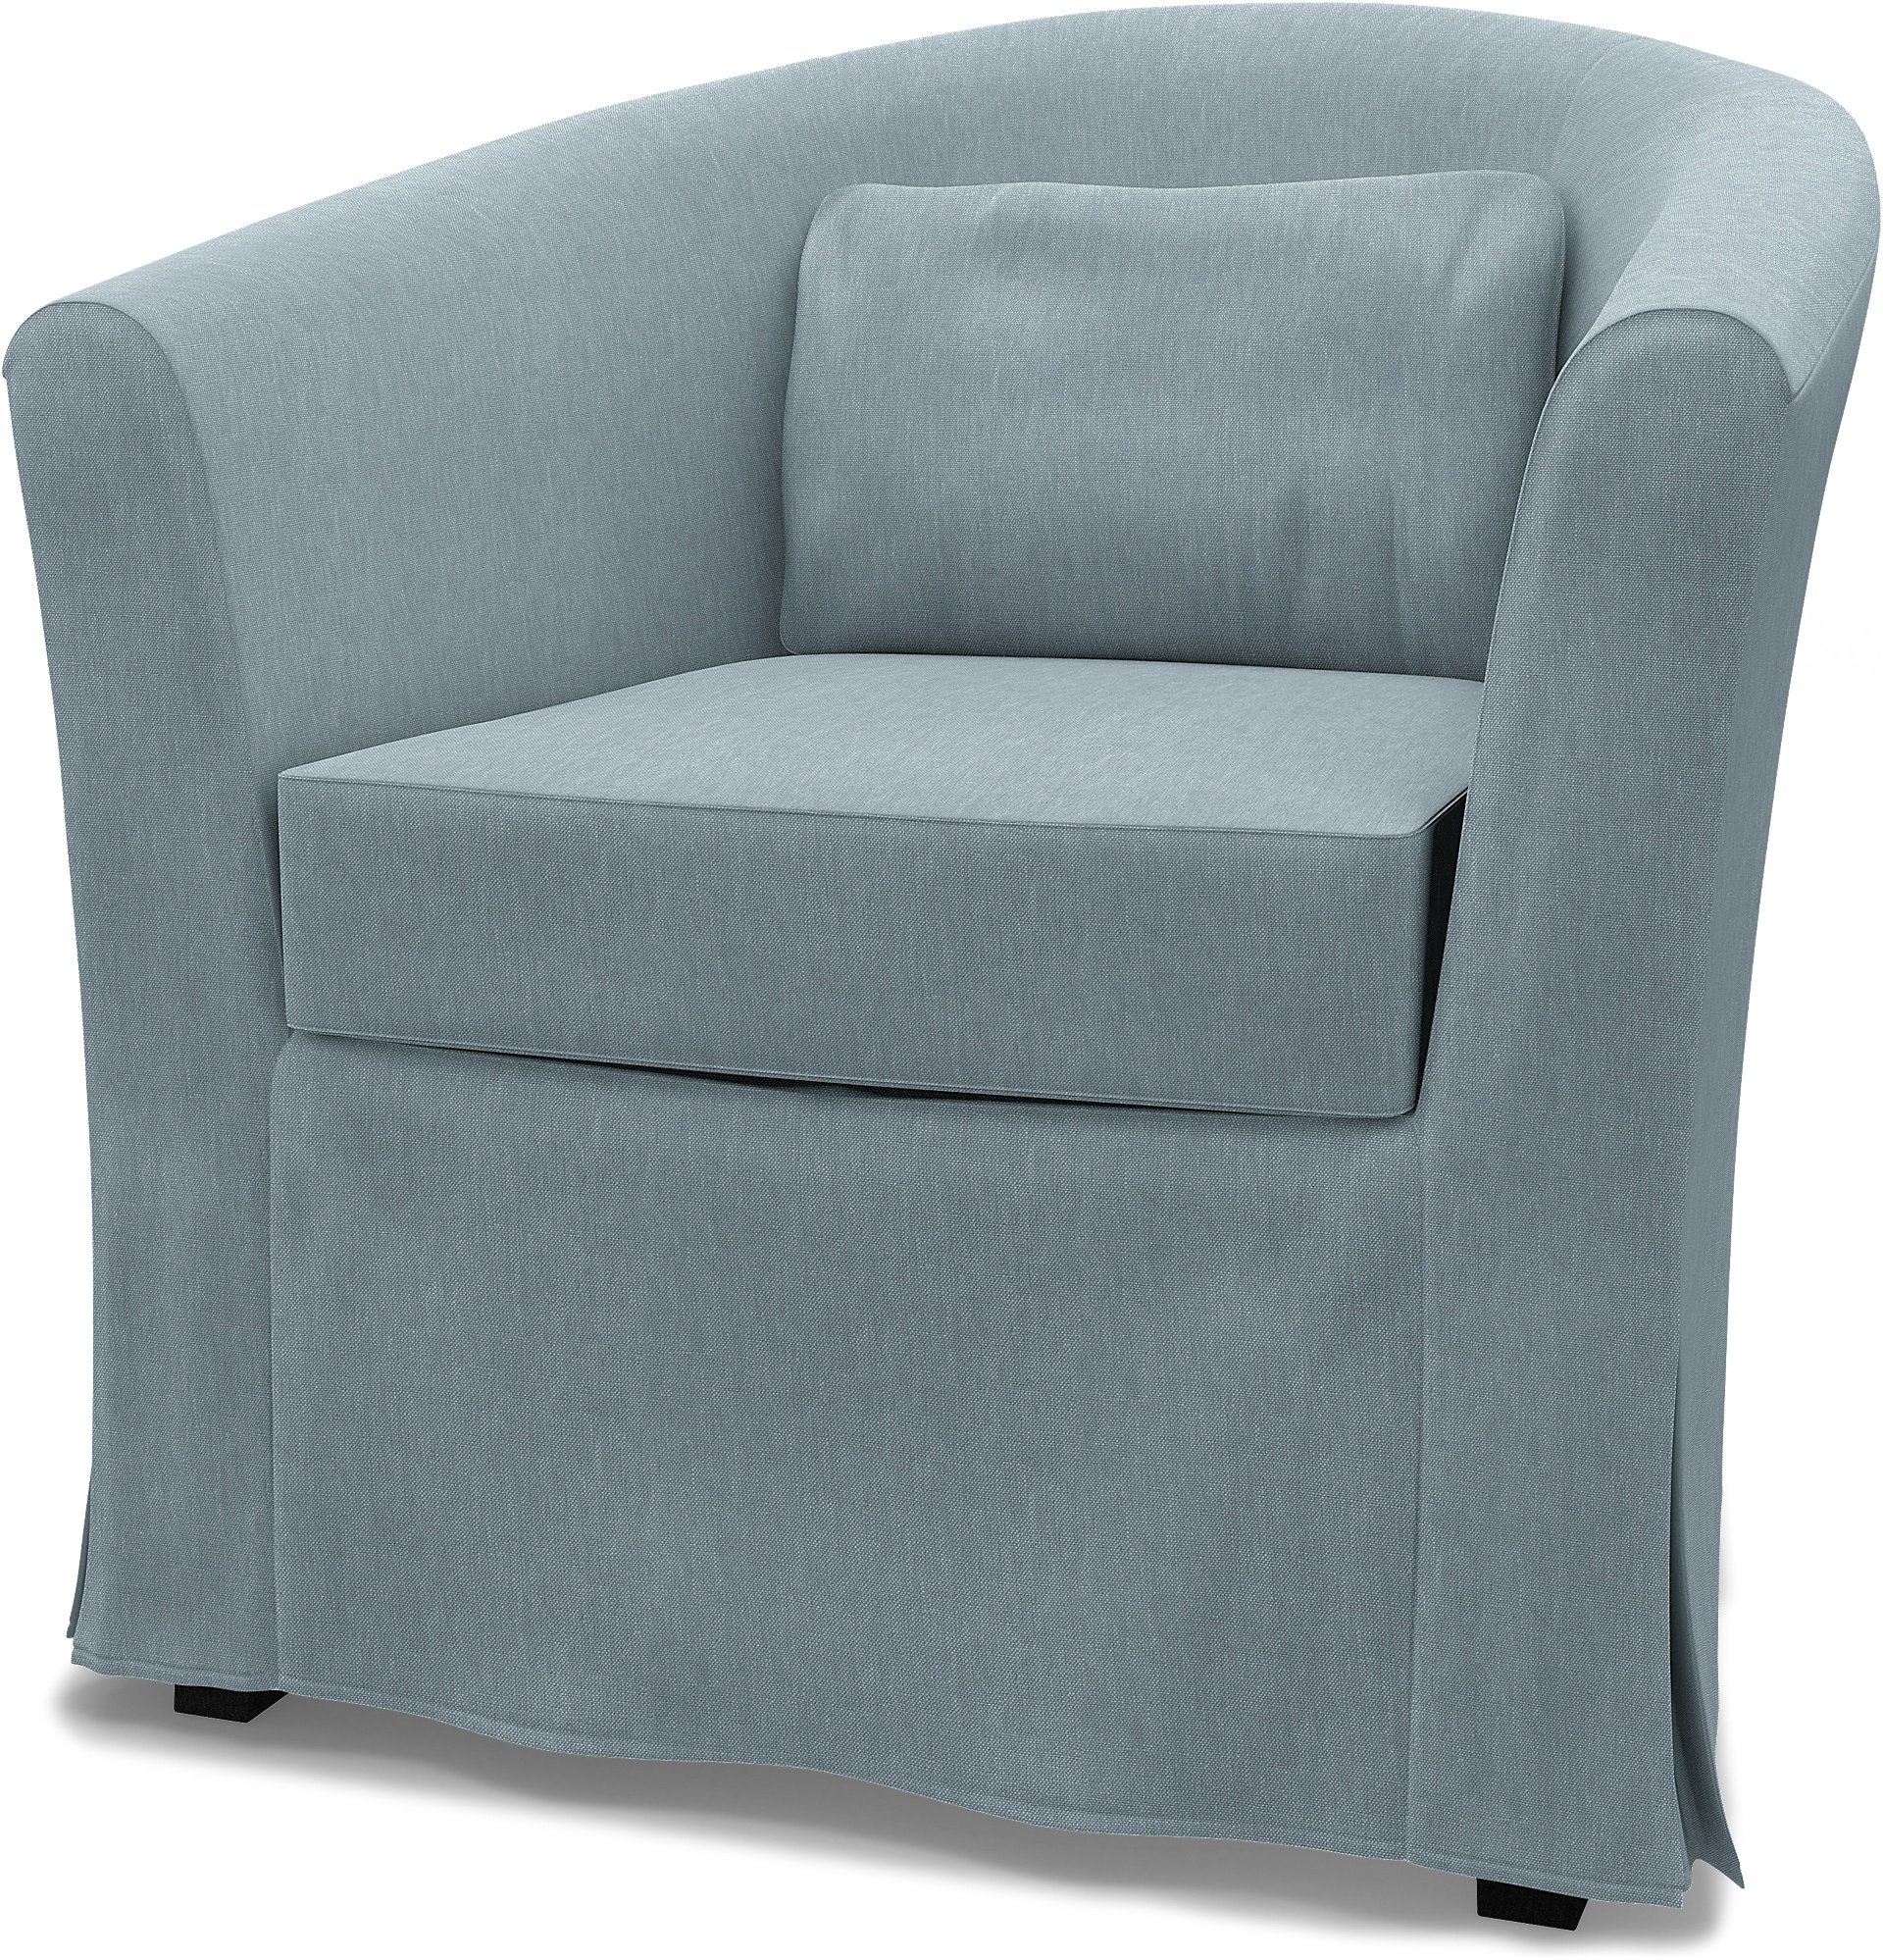 IKEA - Tullsta Armchair Cover, Dusty Blue, Linen - Bemz